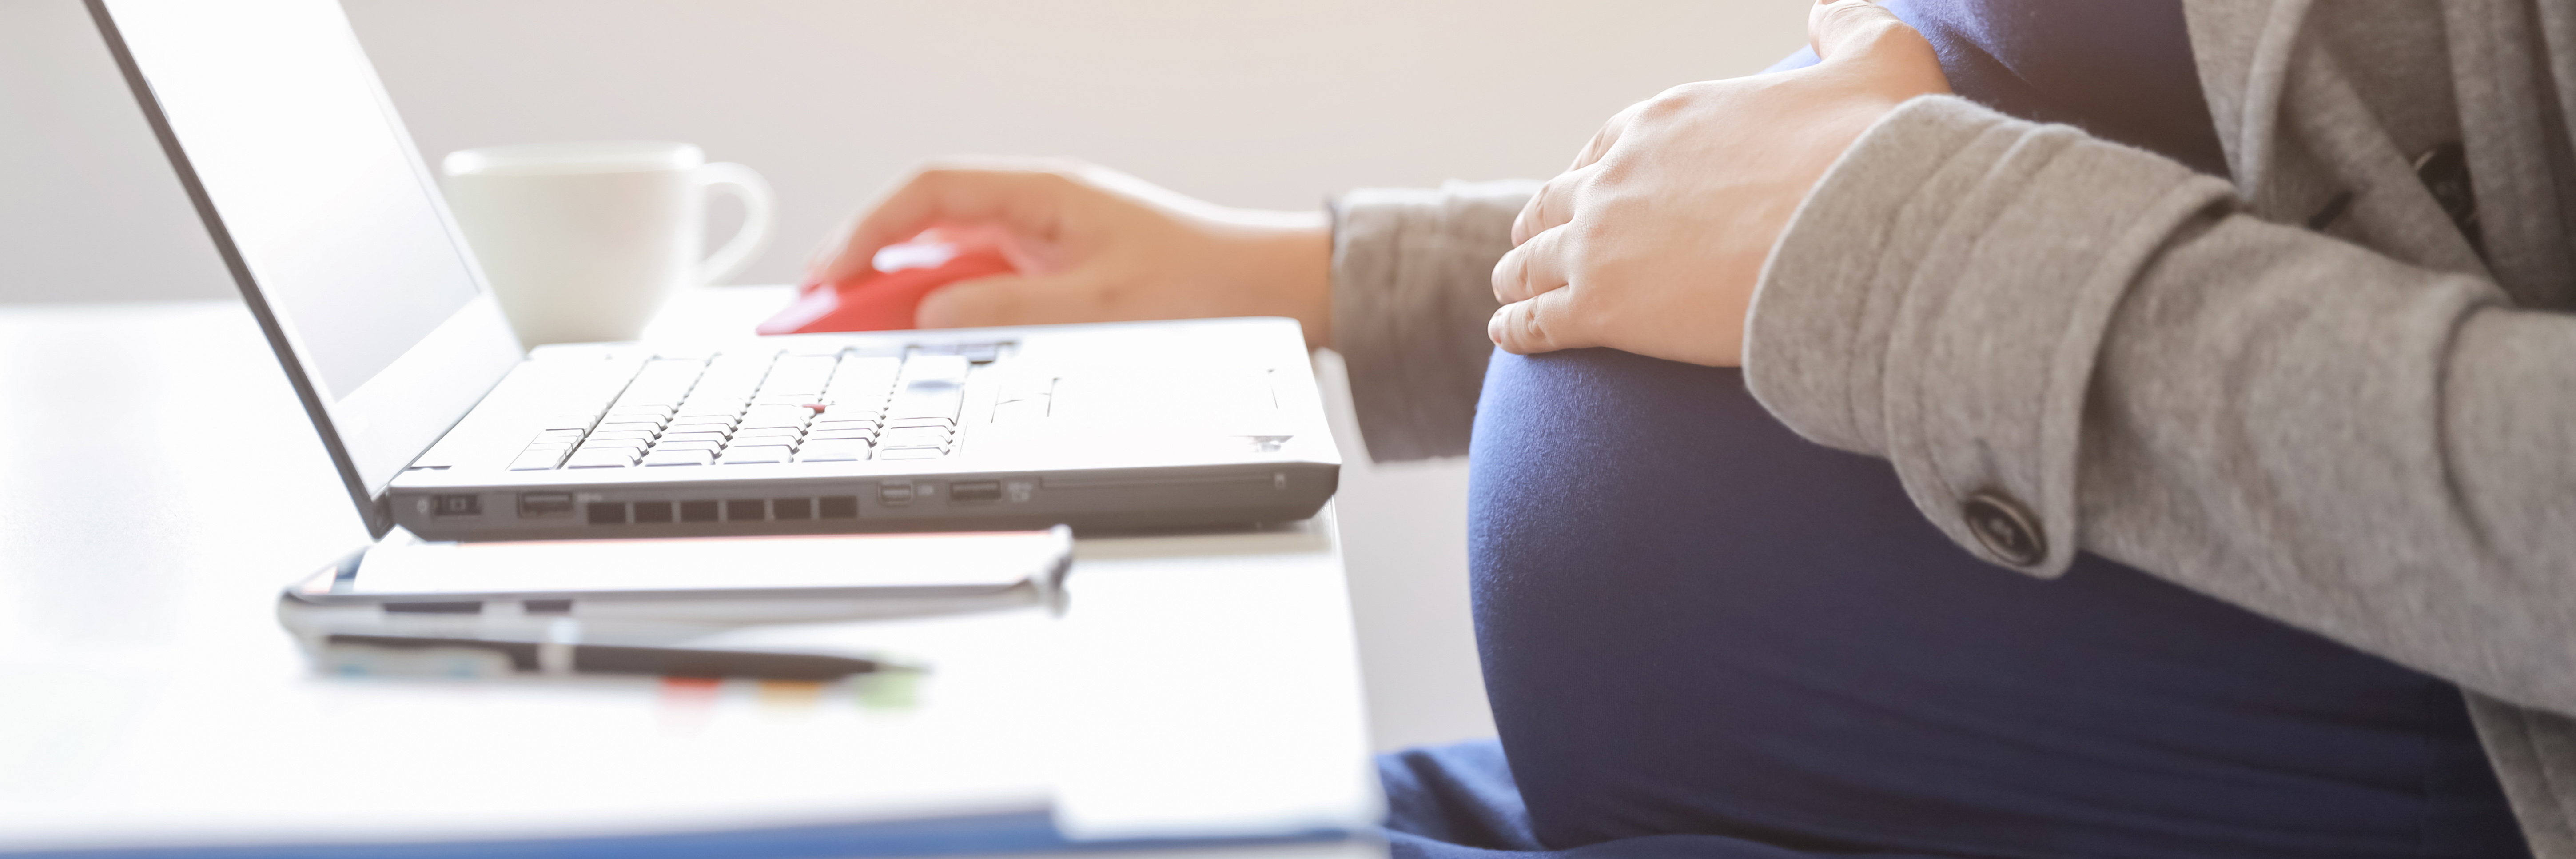 Auf dem Bild sieht man den Bauch einer schwangeren Frau, die am Schreibtisch sitzt und am Laptop arbeitet.